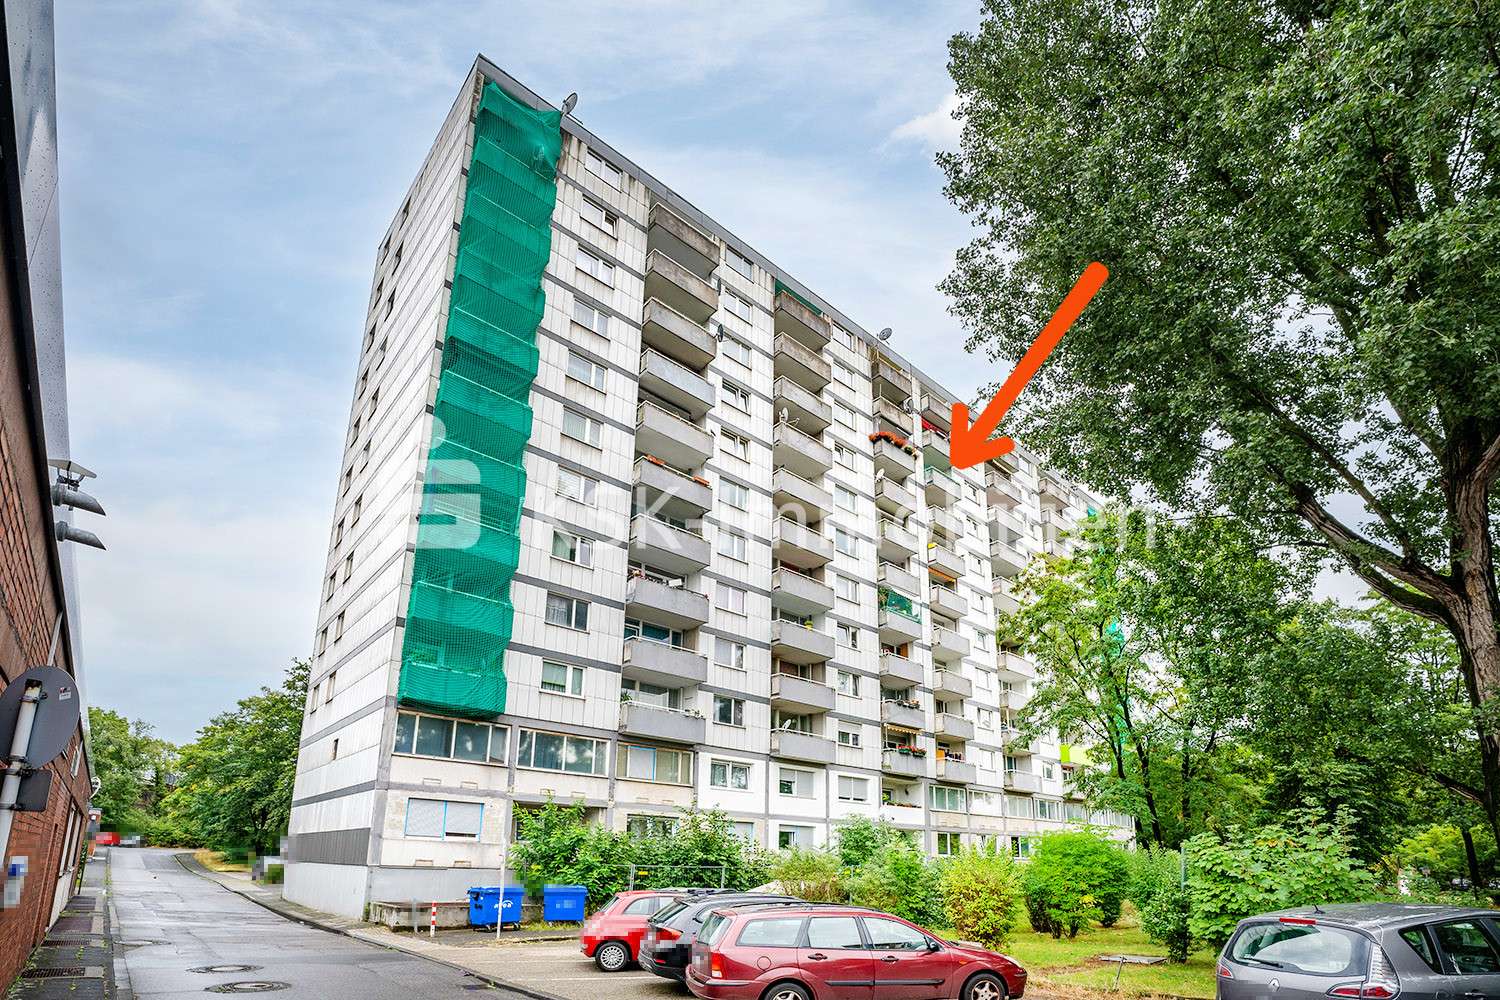 121769 Außenansicht - Appartement in 51373 Leverkusen mit 37m² kaufen